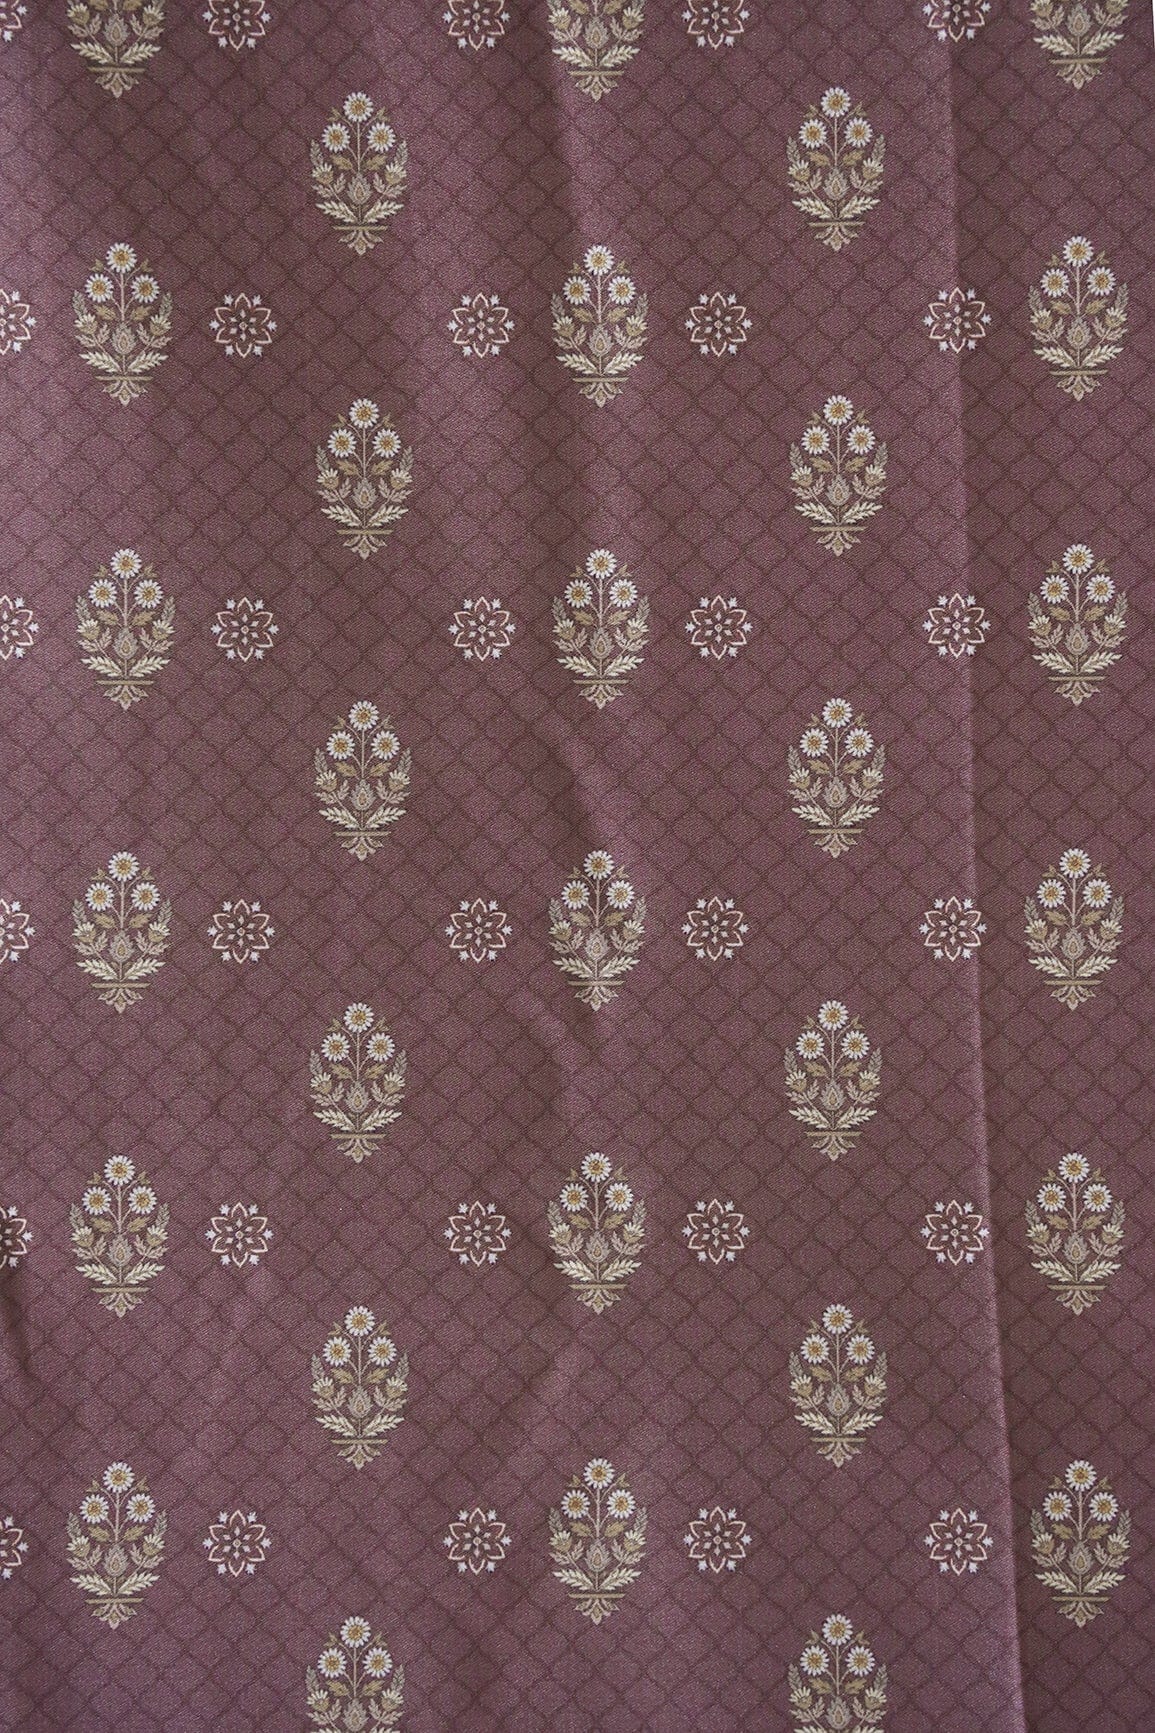 doeraa Prints Dark Mauve Floral Butta Pattern Digital Print On Satin Fabric